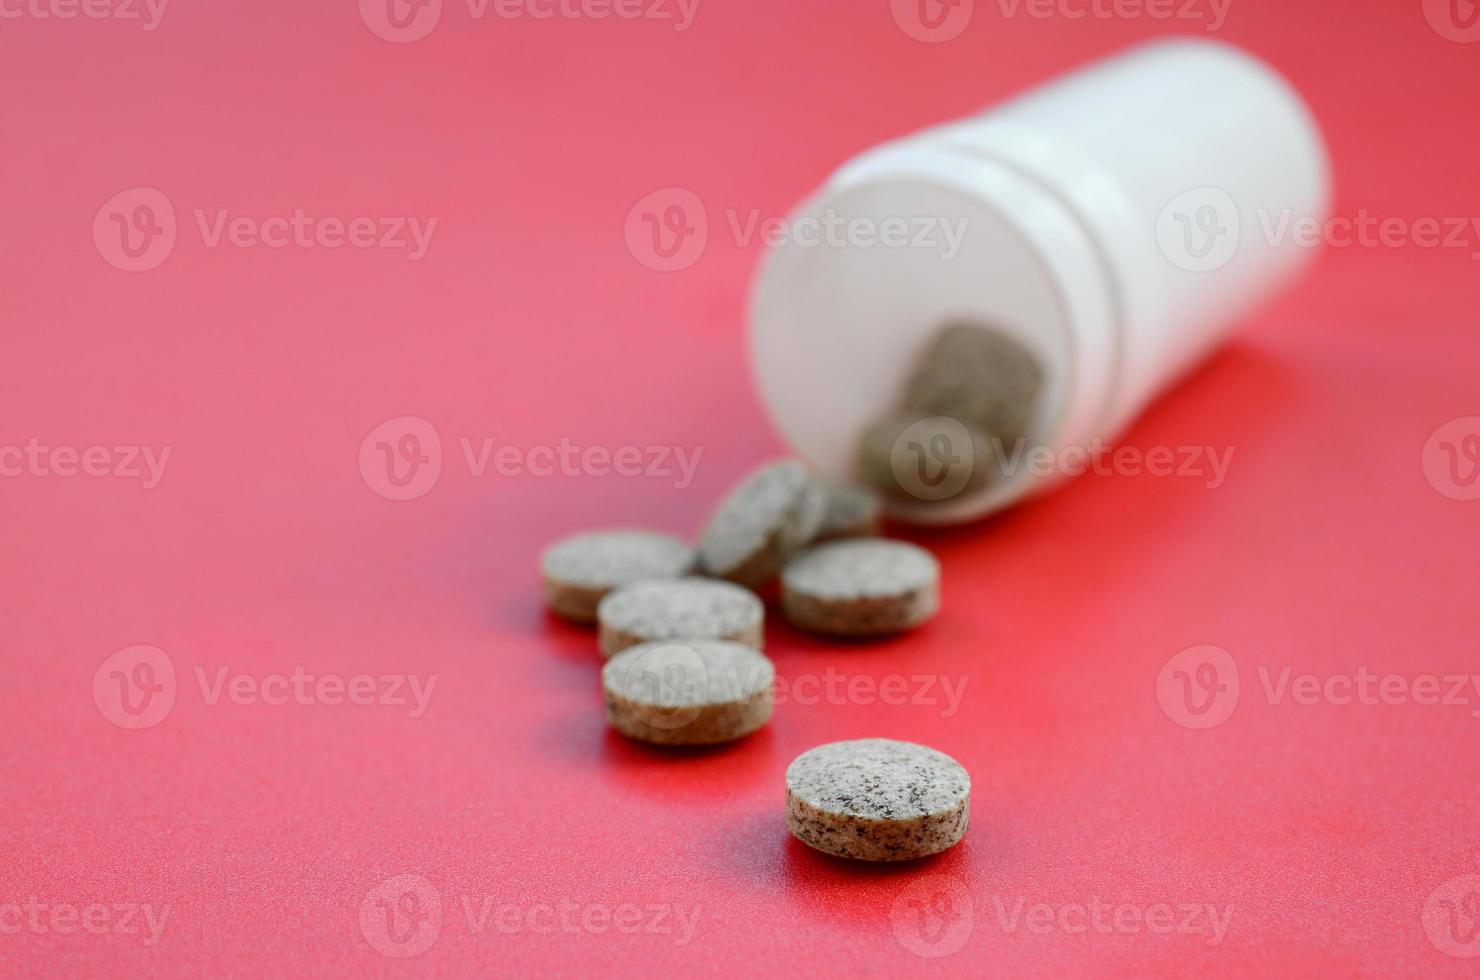 mehrere braune tabletten fallen auf der roten oberfläche aus dem plastikglas. Hintergrundbild zu medizinischen und pharmazeutischen Themen foto